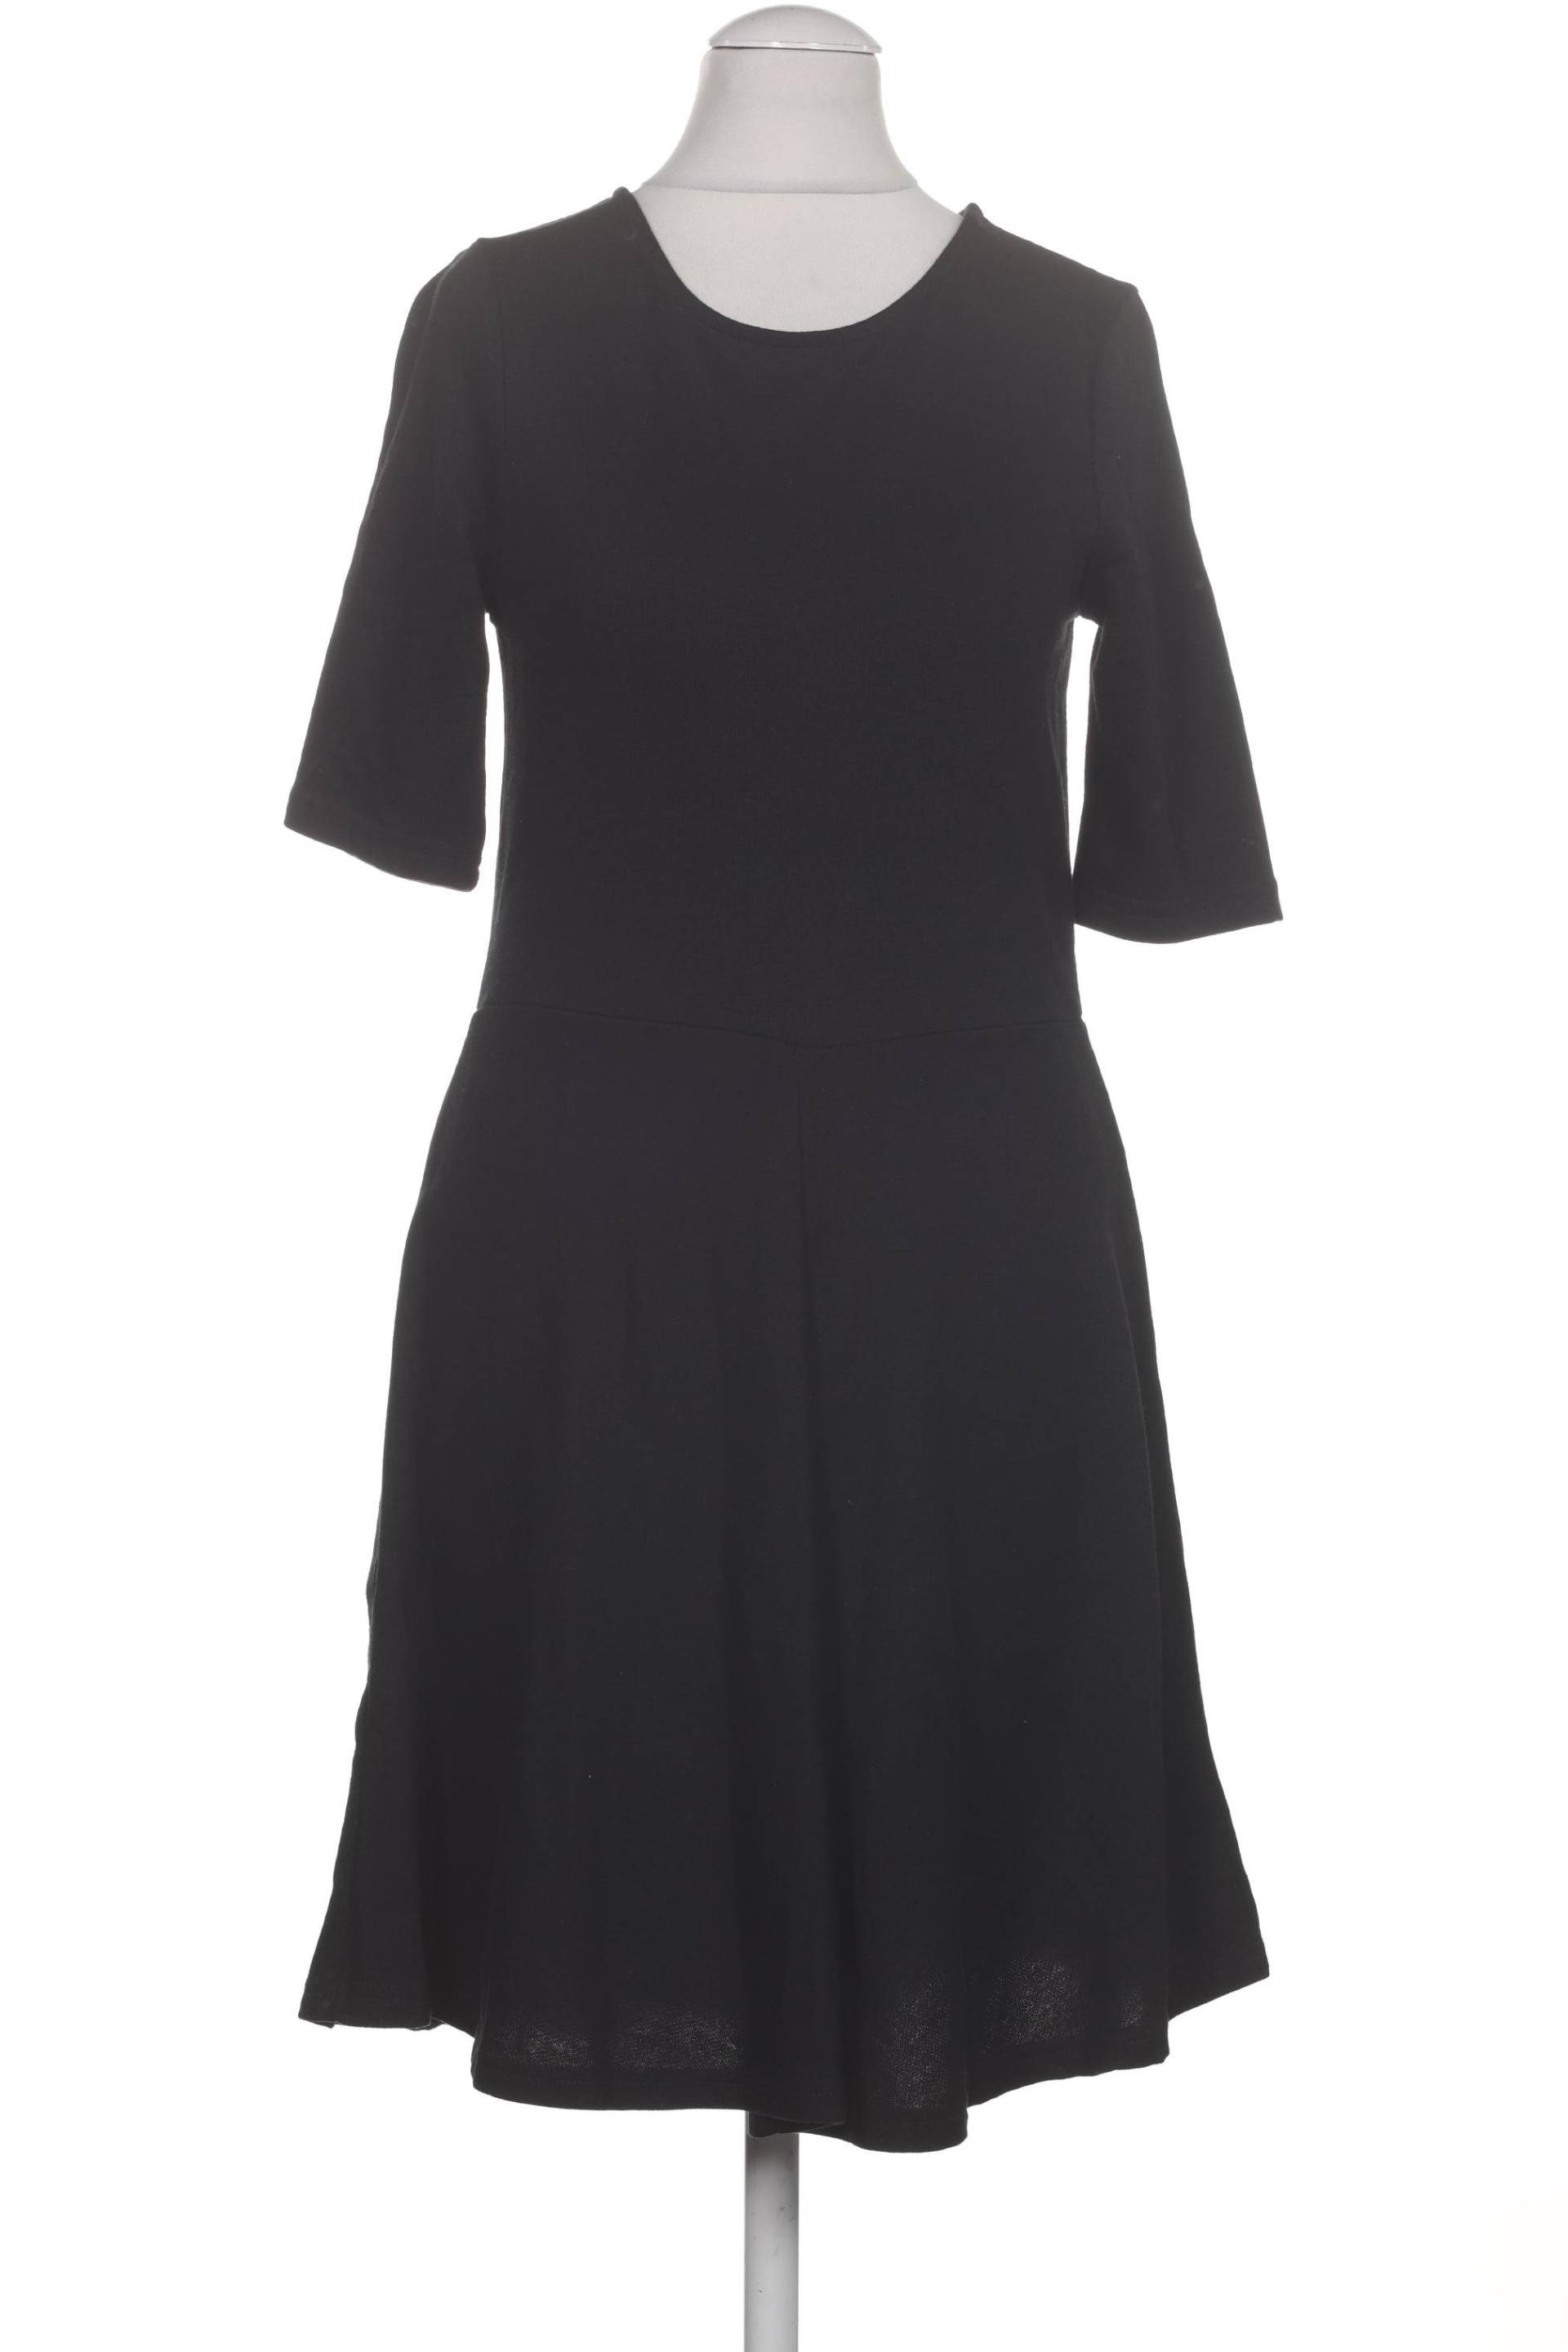 Vero Moda Damen Kleid, schwarz von Vero Moda